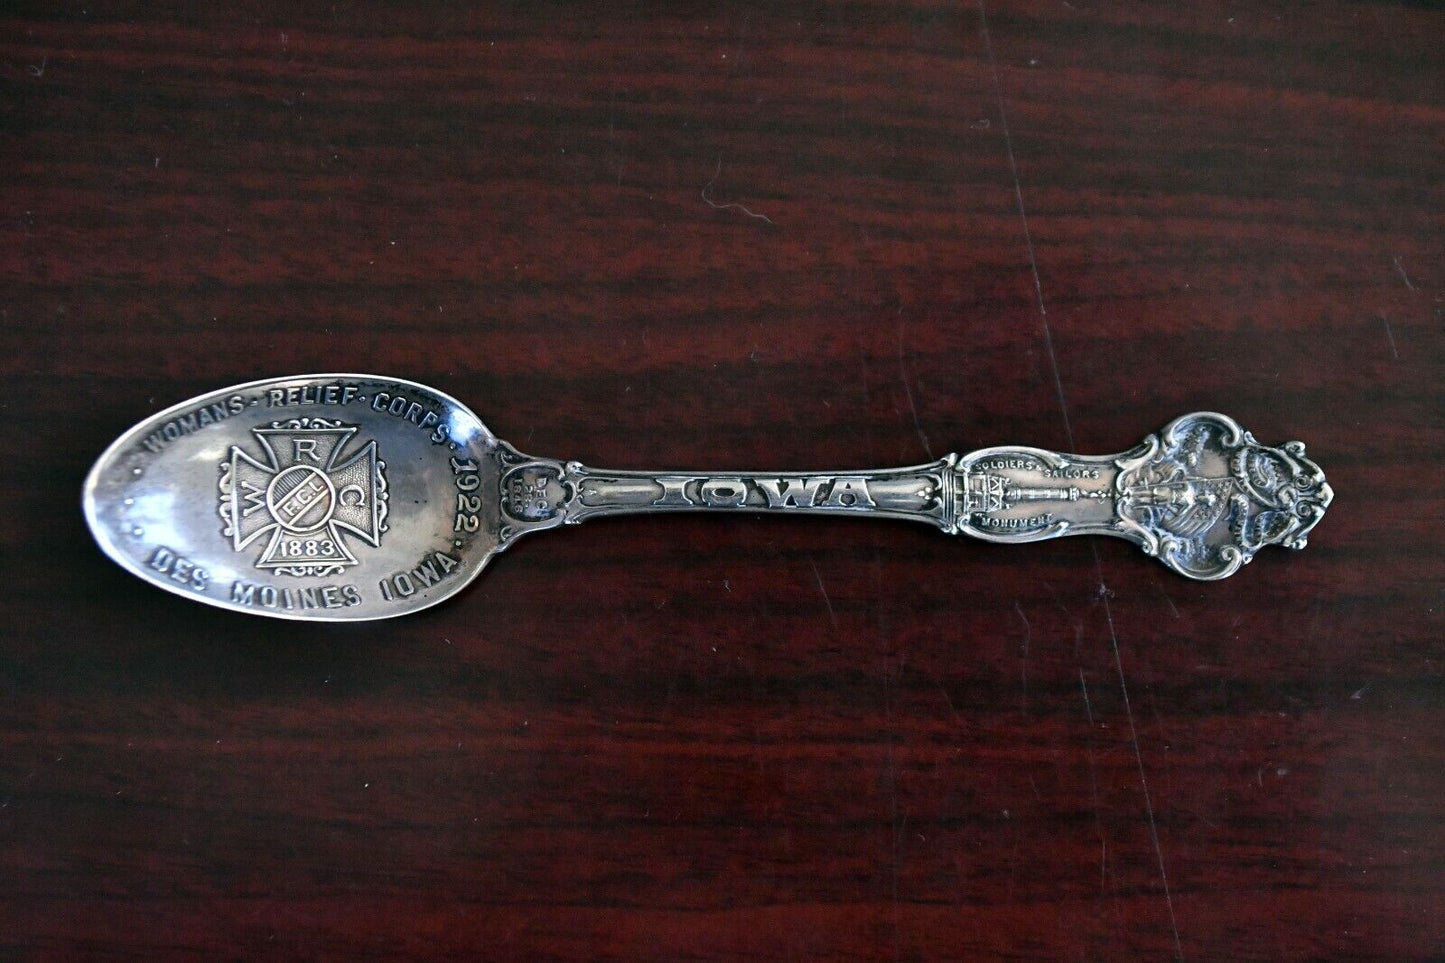 1922 Womens Relief Corps Des Moines Iowa Sterling 5 1/4" Souvenir Spoon .55 oz.